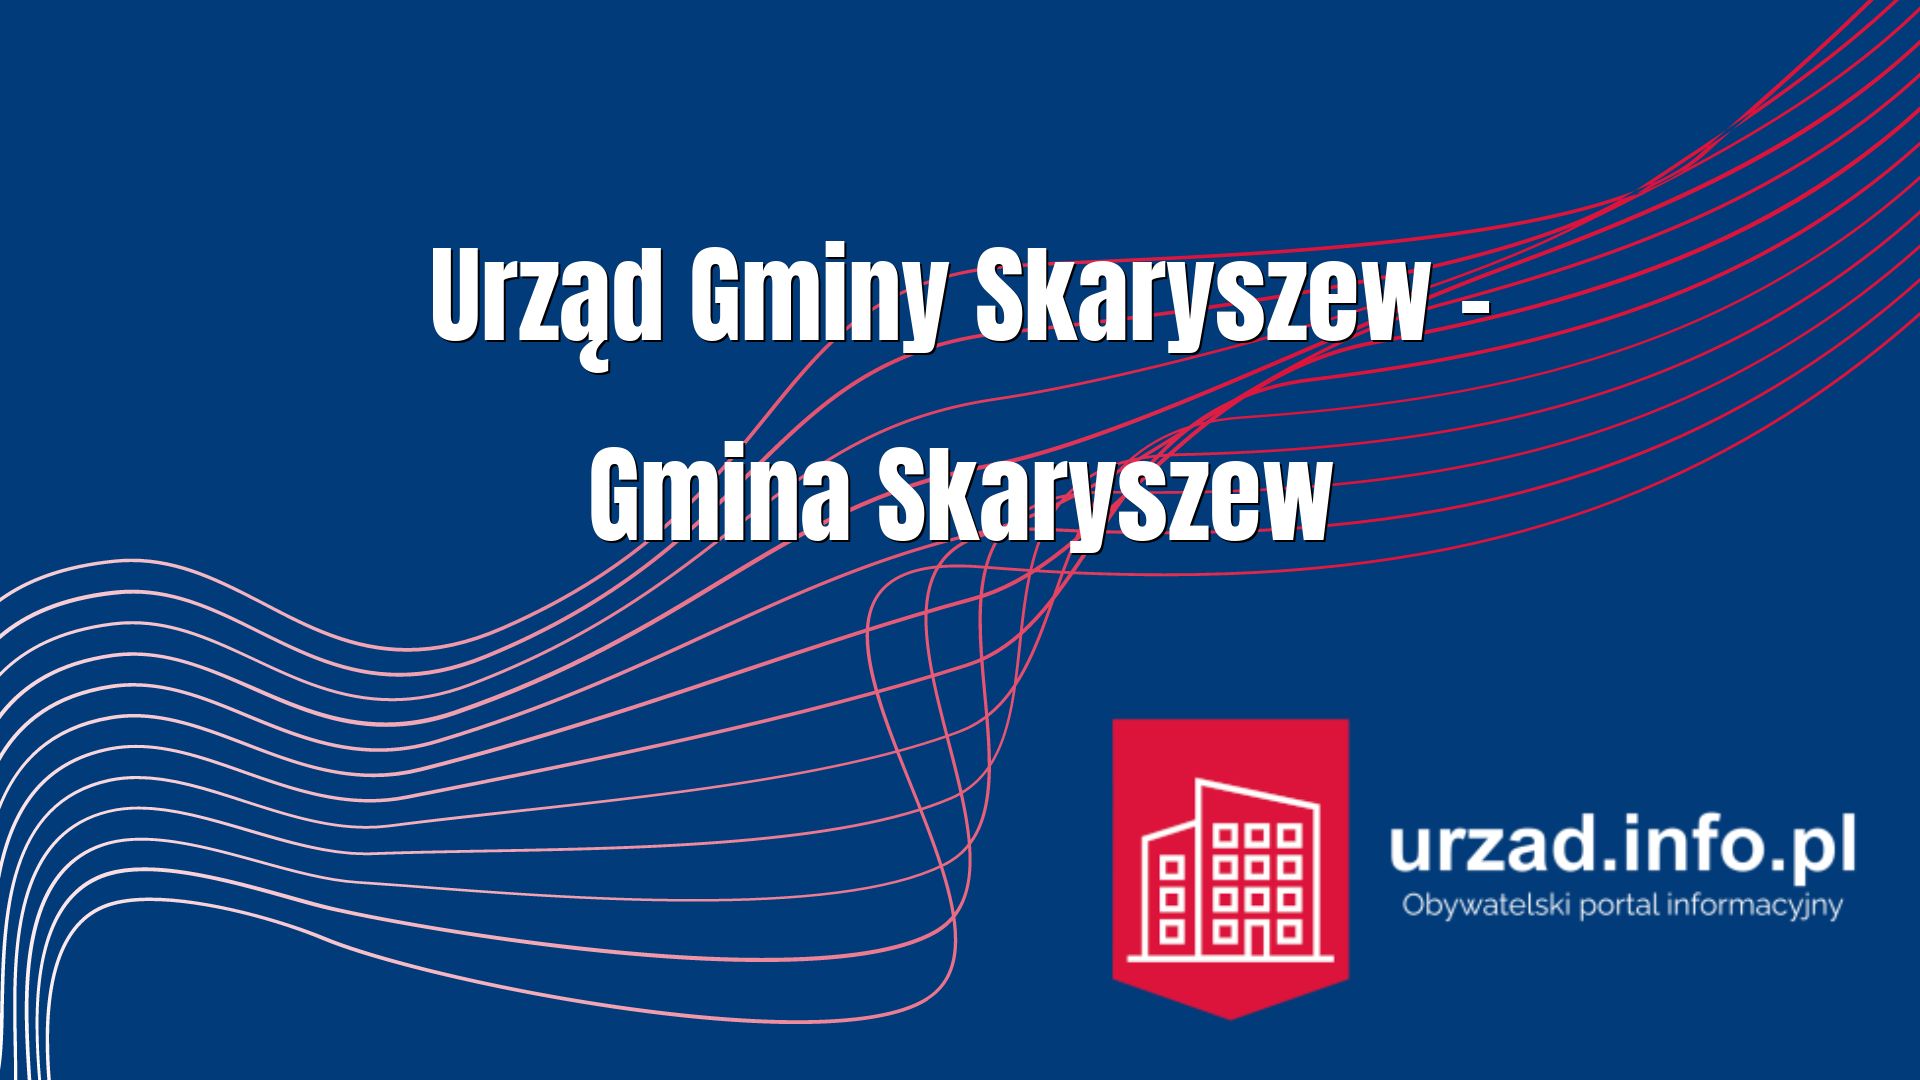 Urząd Gminy Skaryszew – Gmina Skaryszew